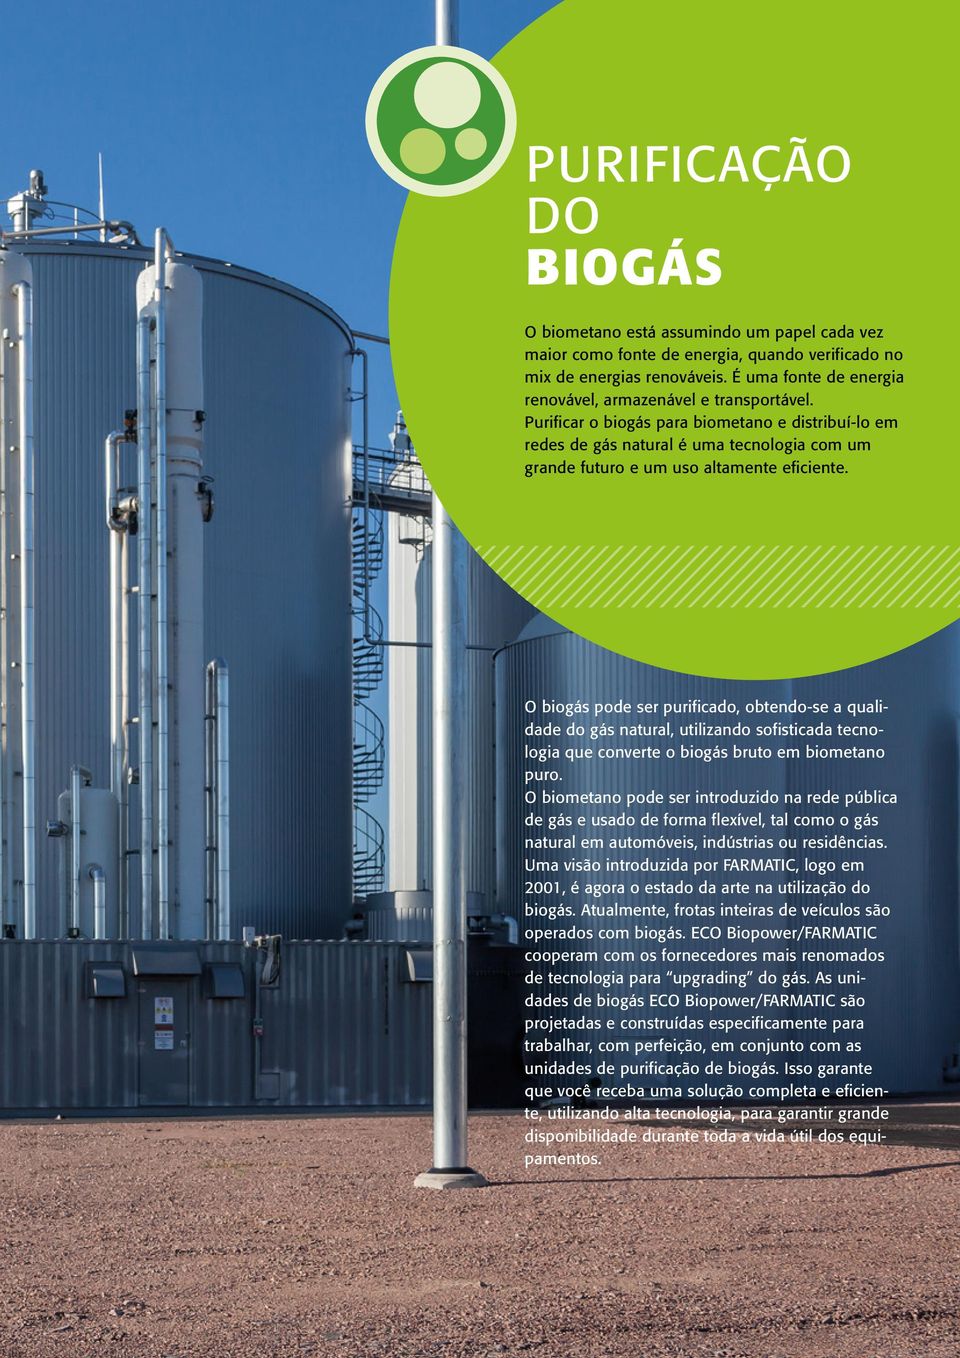 Purificar o biogás para biometano e distribuí-lo em redes de gás natural é uma tecnologia com um grande futuro e um uso altamente eficiente.